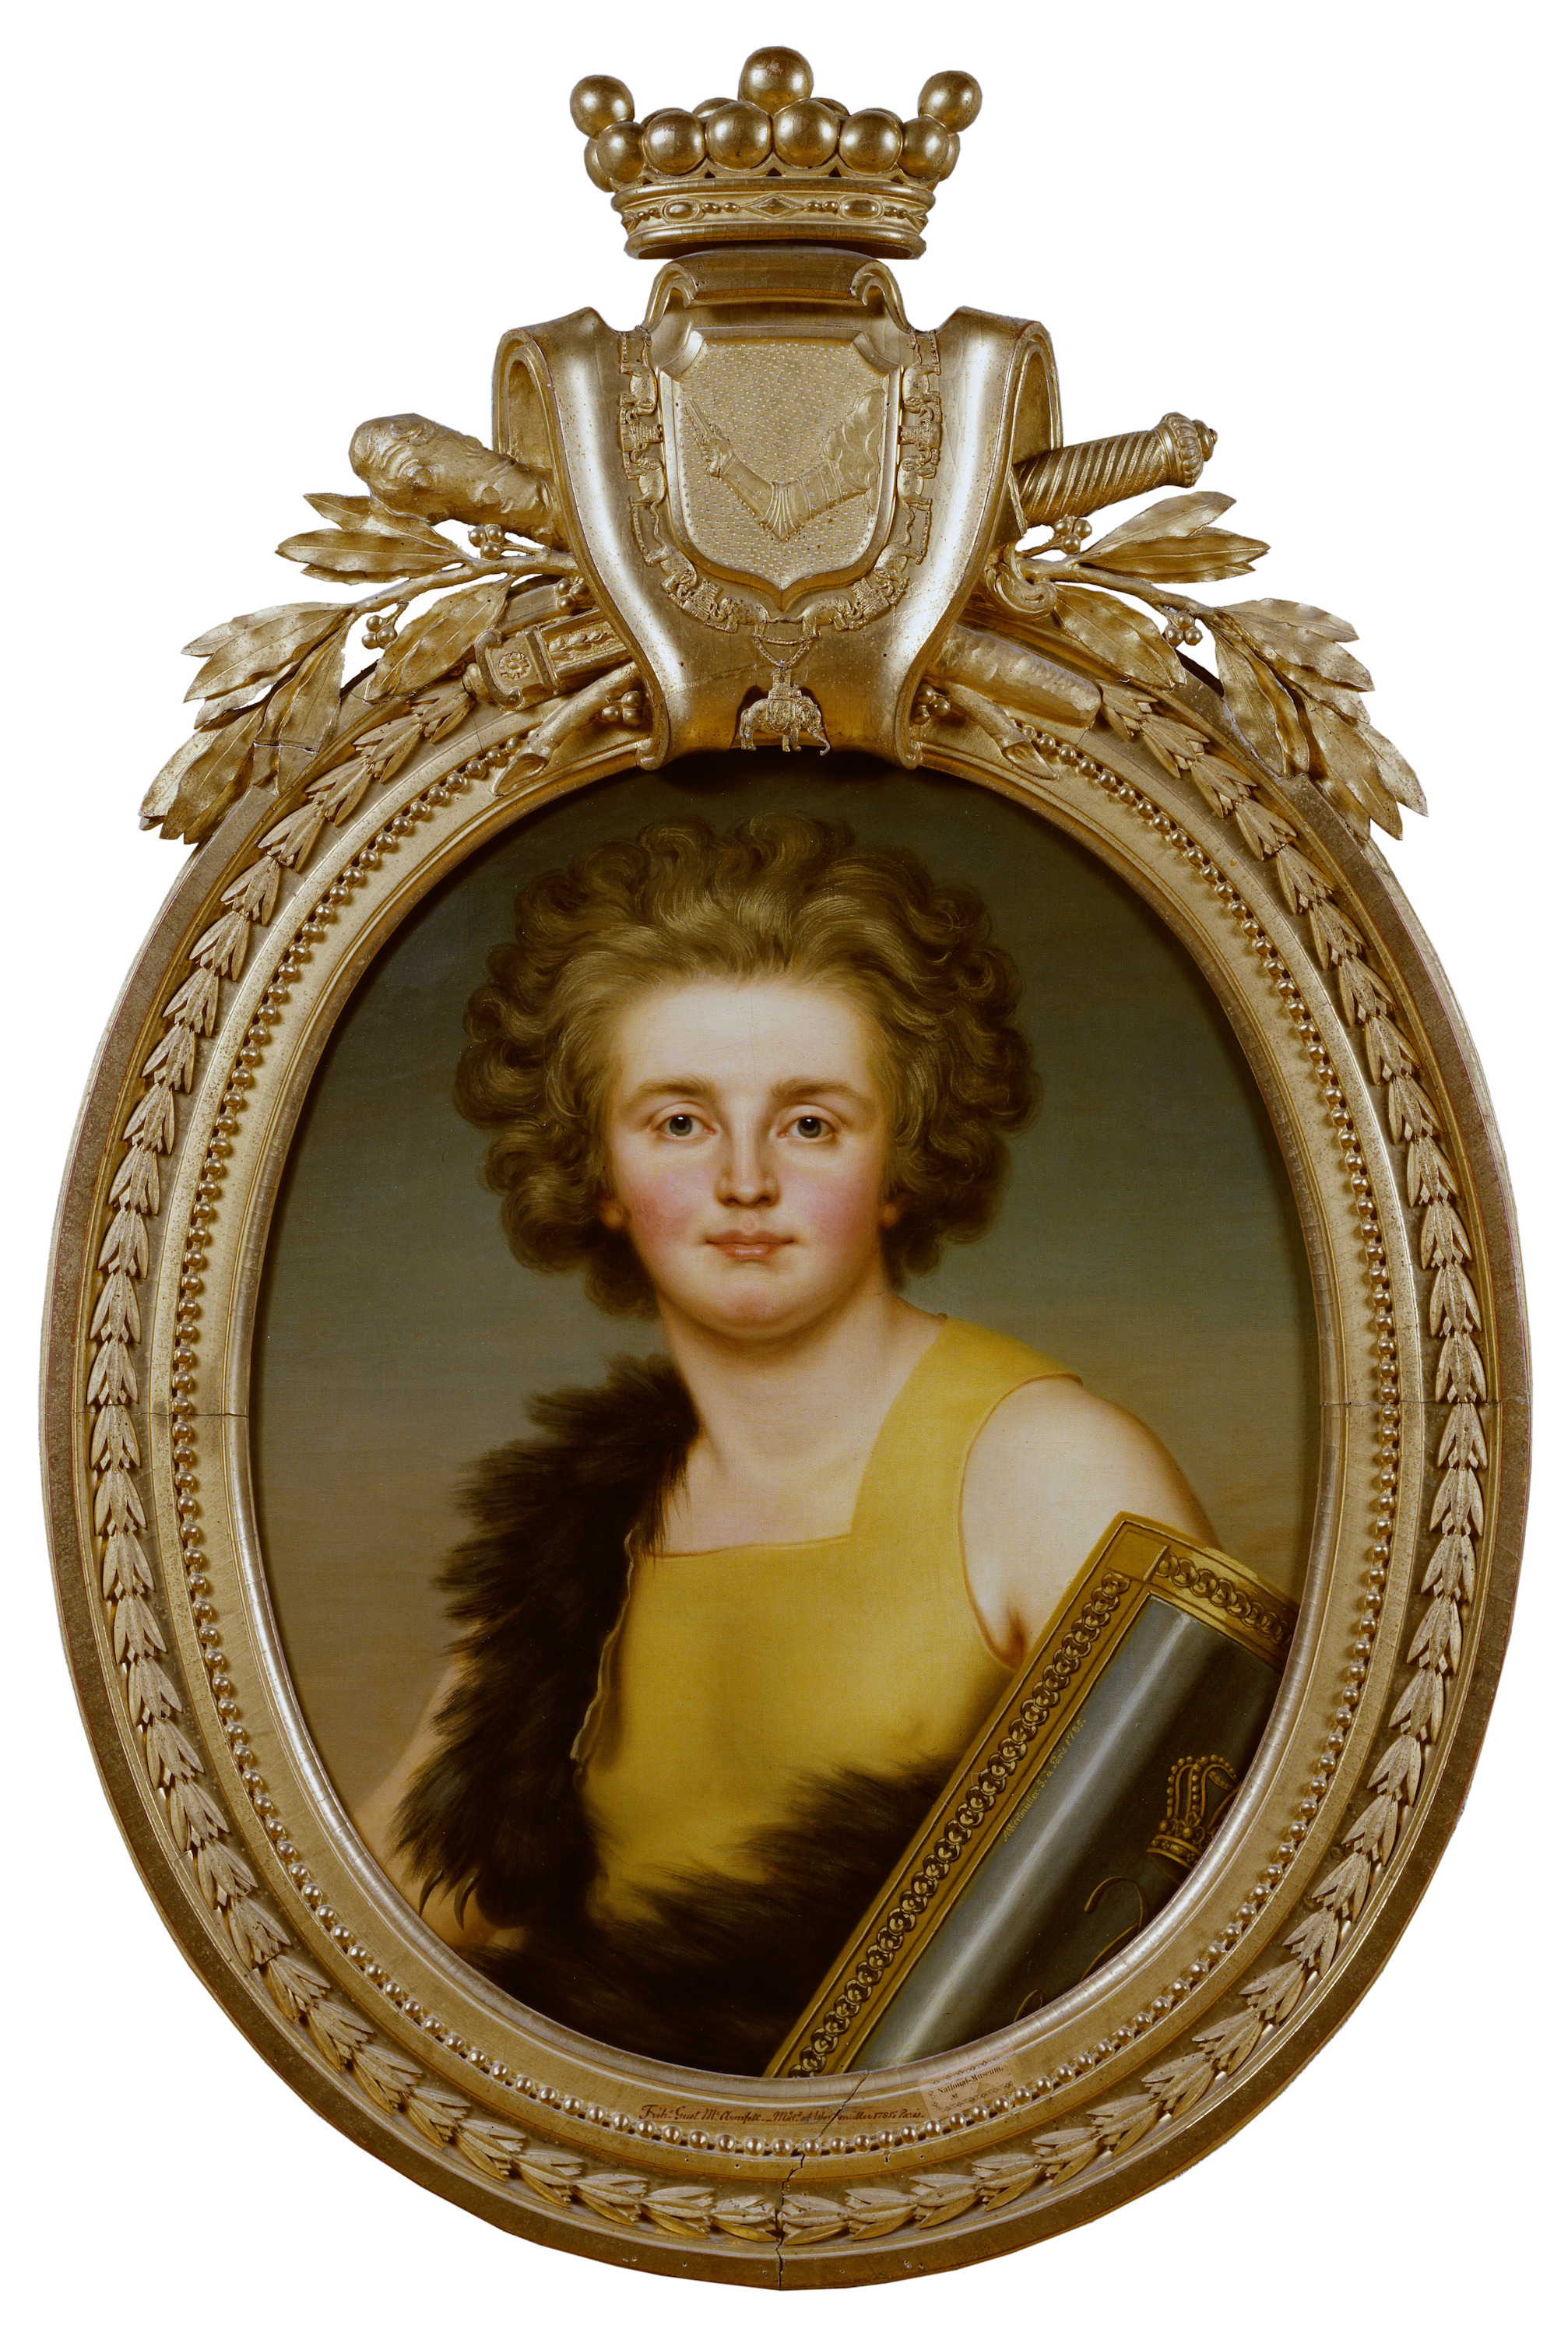 Густав Мориц Армфельт by Адольф Ульрих Вертмюллер - датируется 1785 годом - 73 x 58,5 cm 